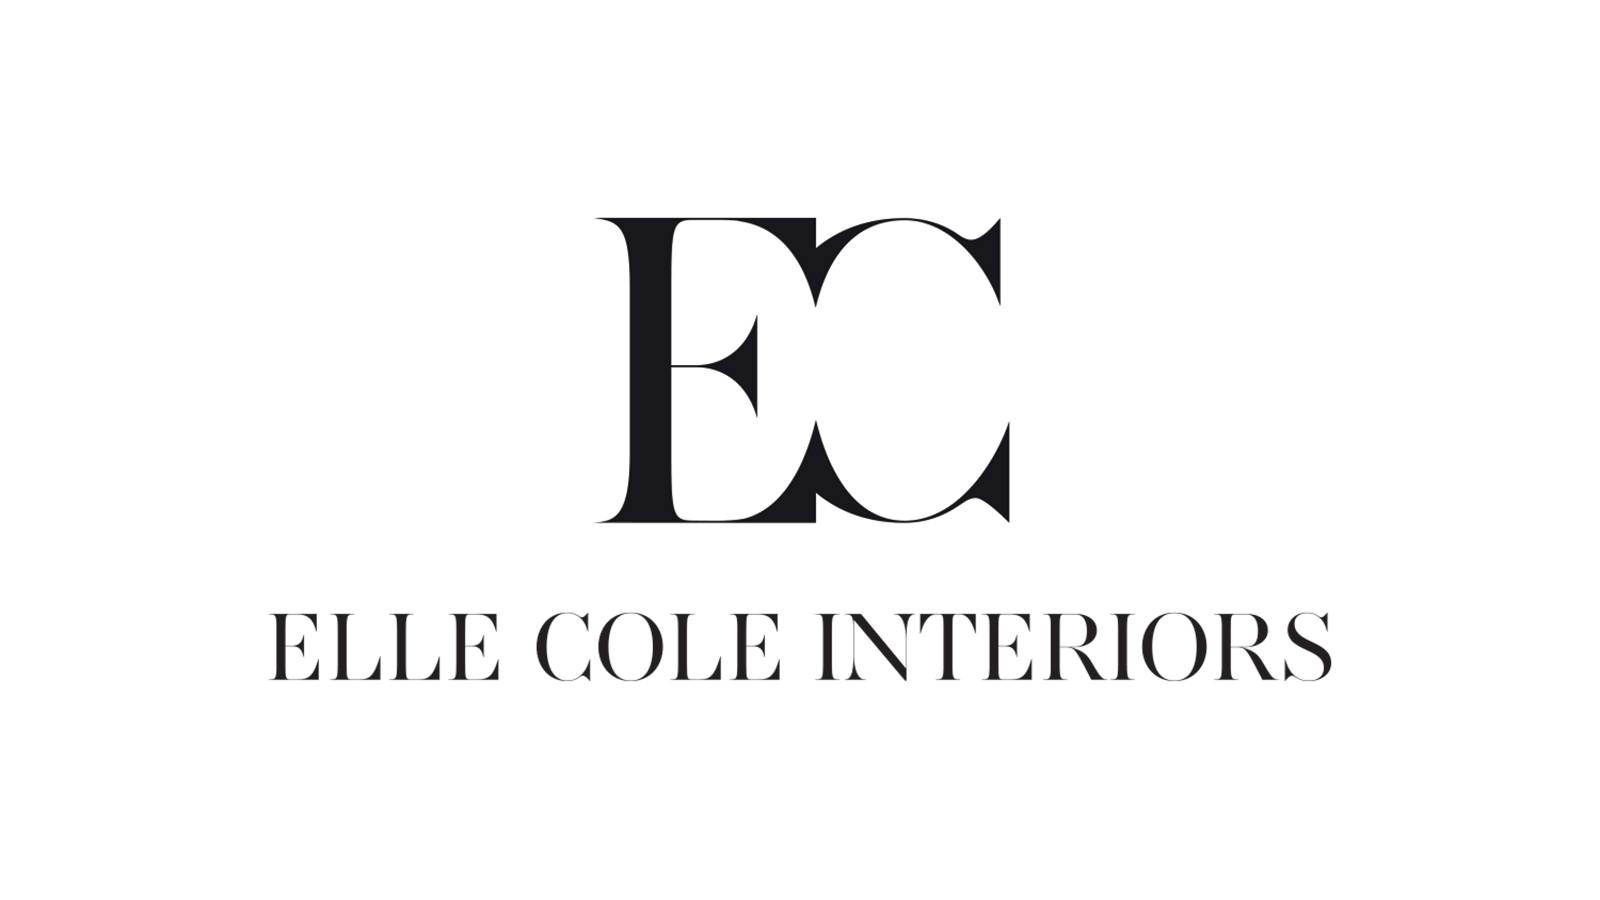 EC-_-Elle-Cole-Vector-2_1600x900